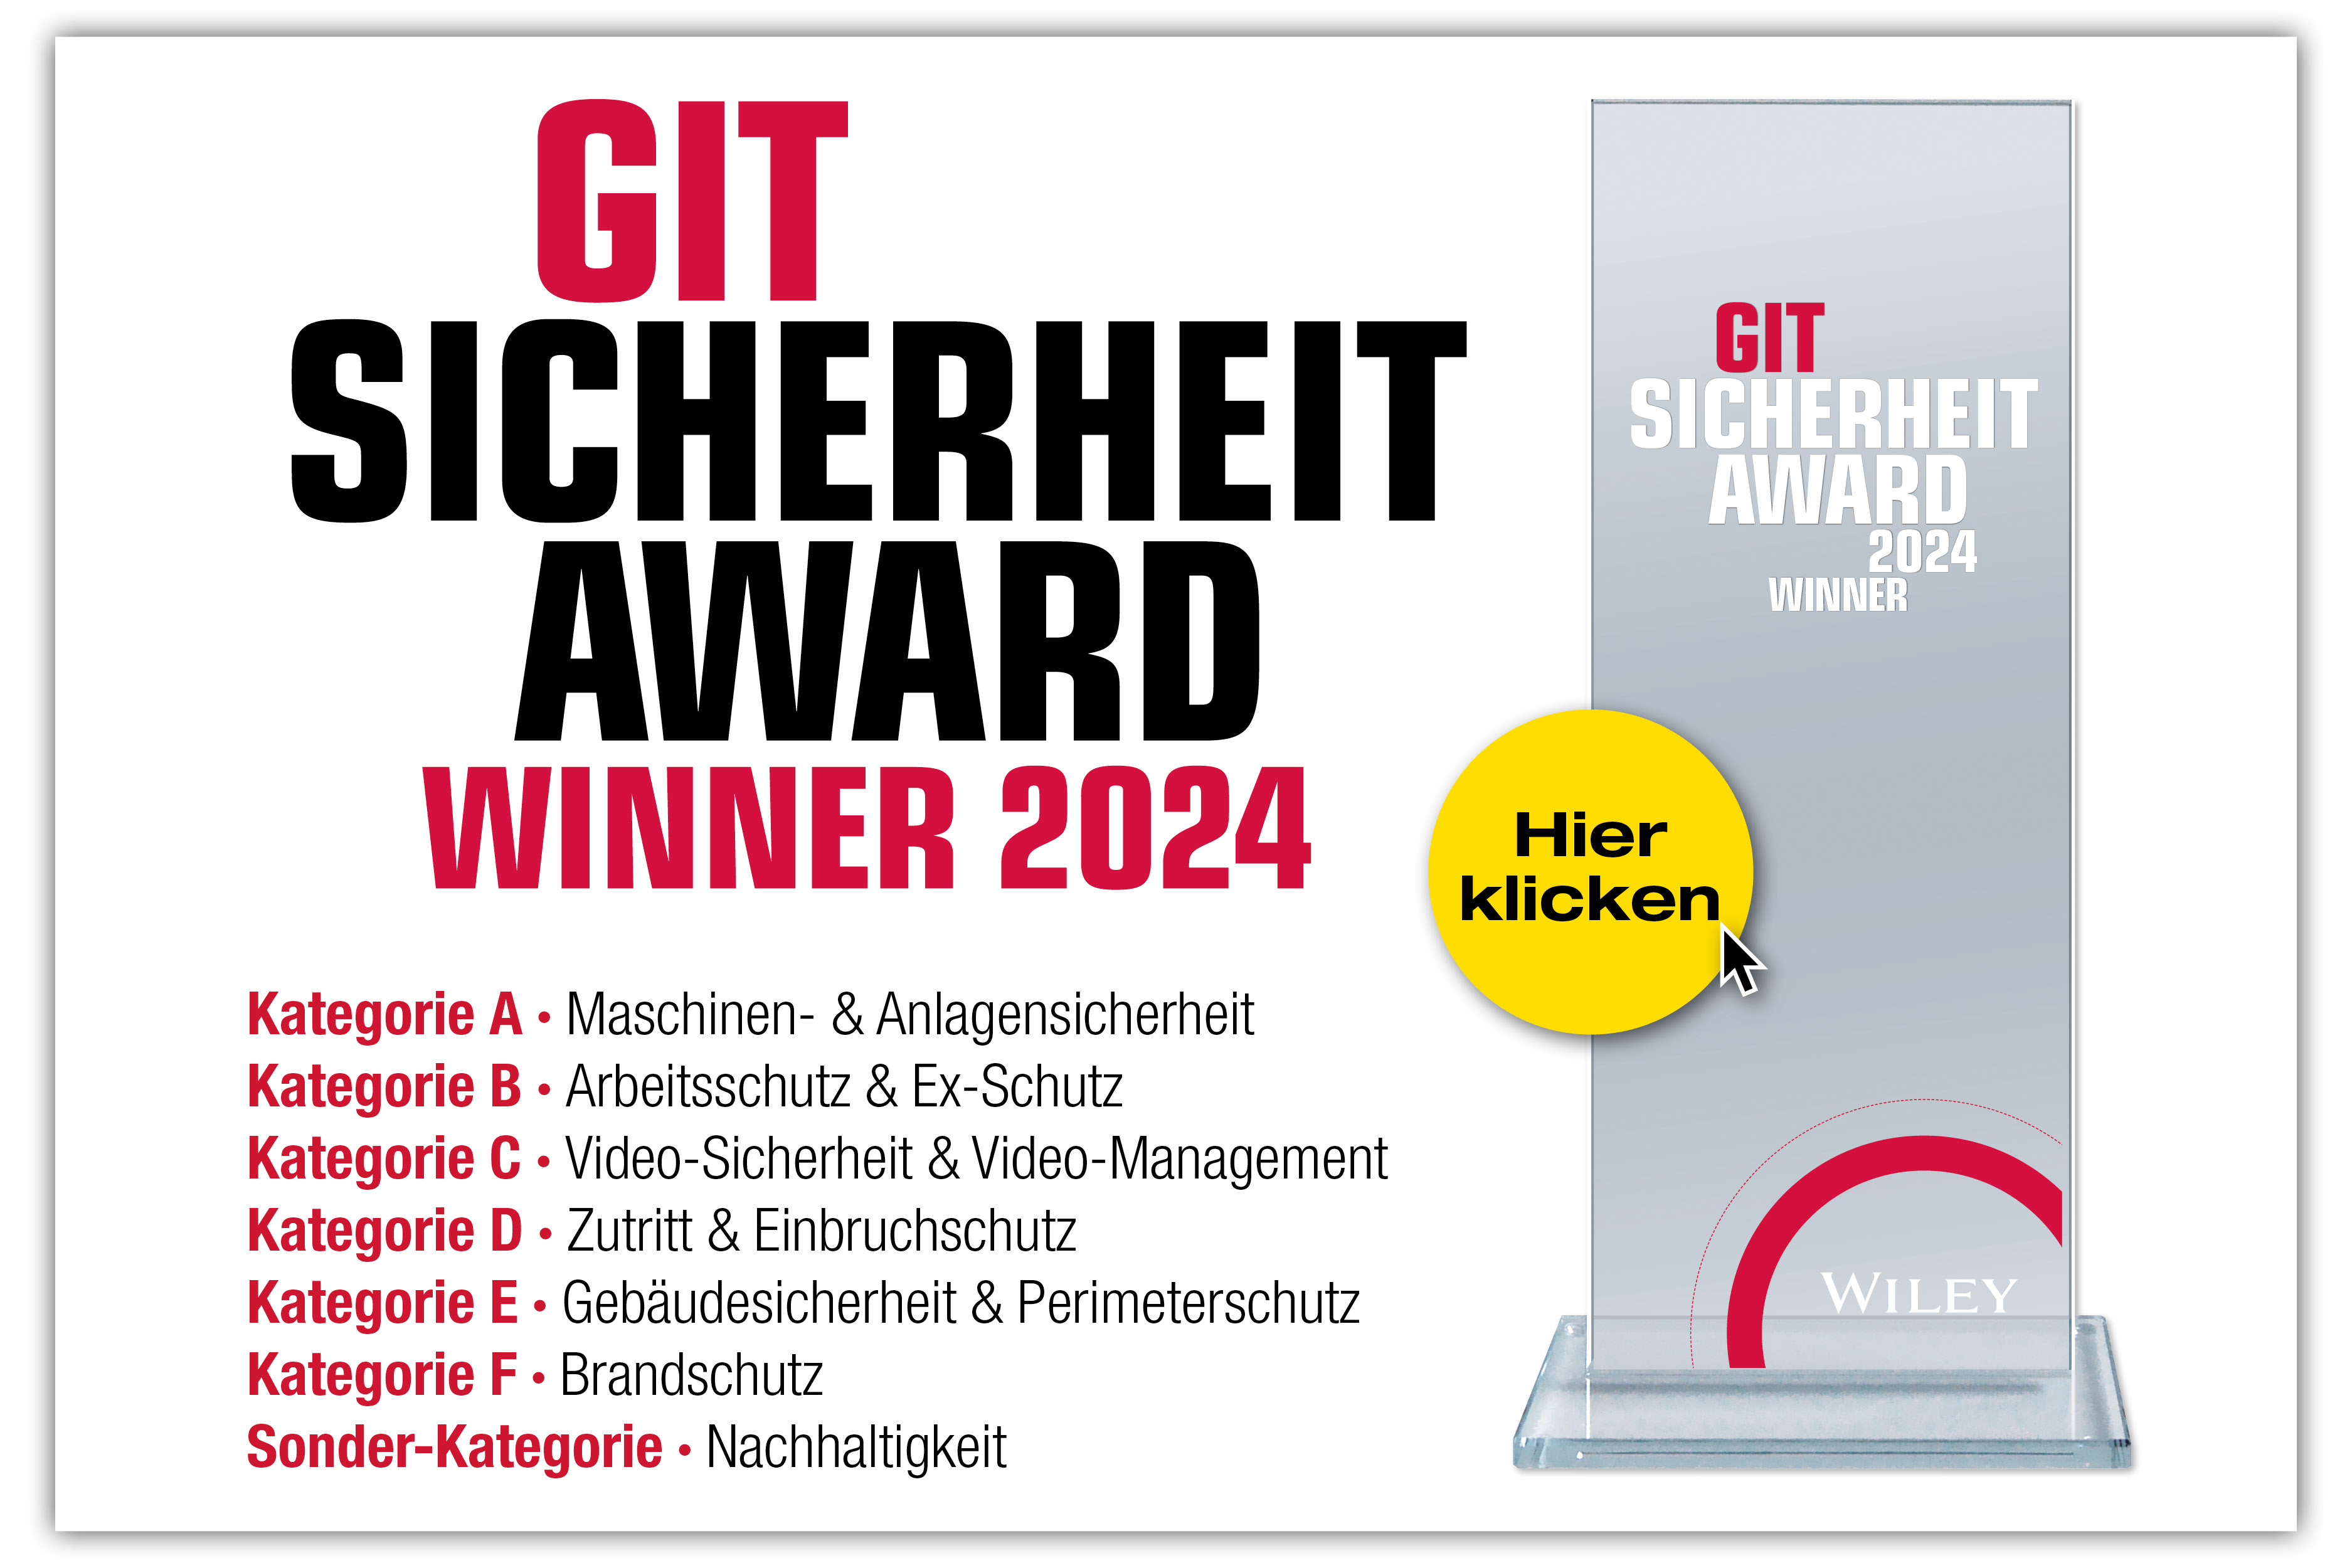 GIT SICHERHEIT AWARD GSA 2024 - Die Gewinner